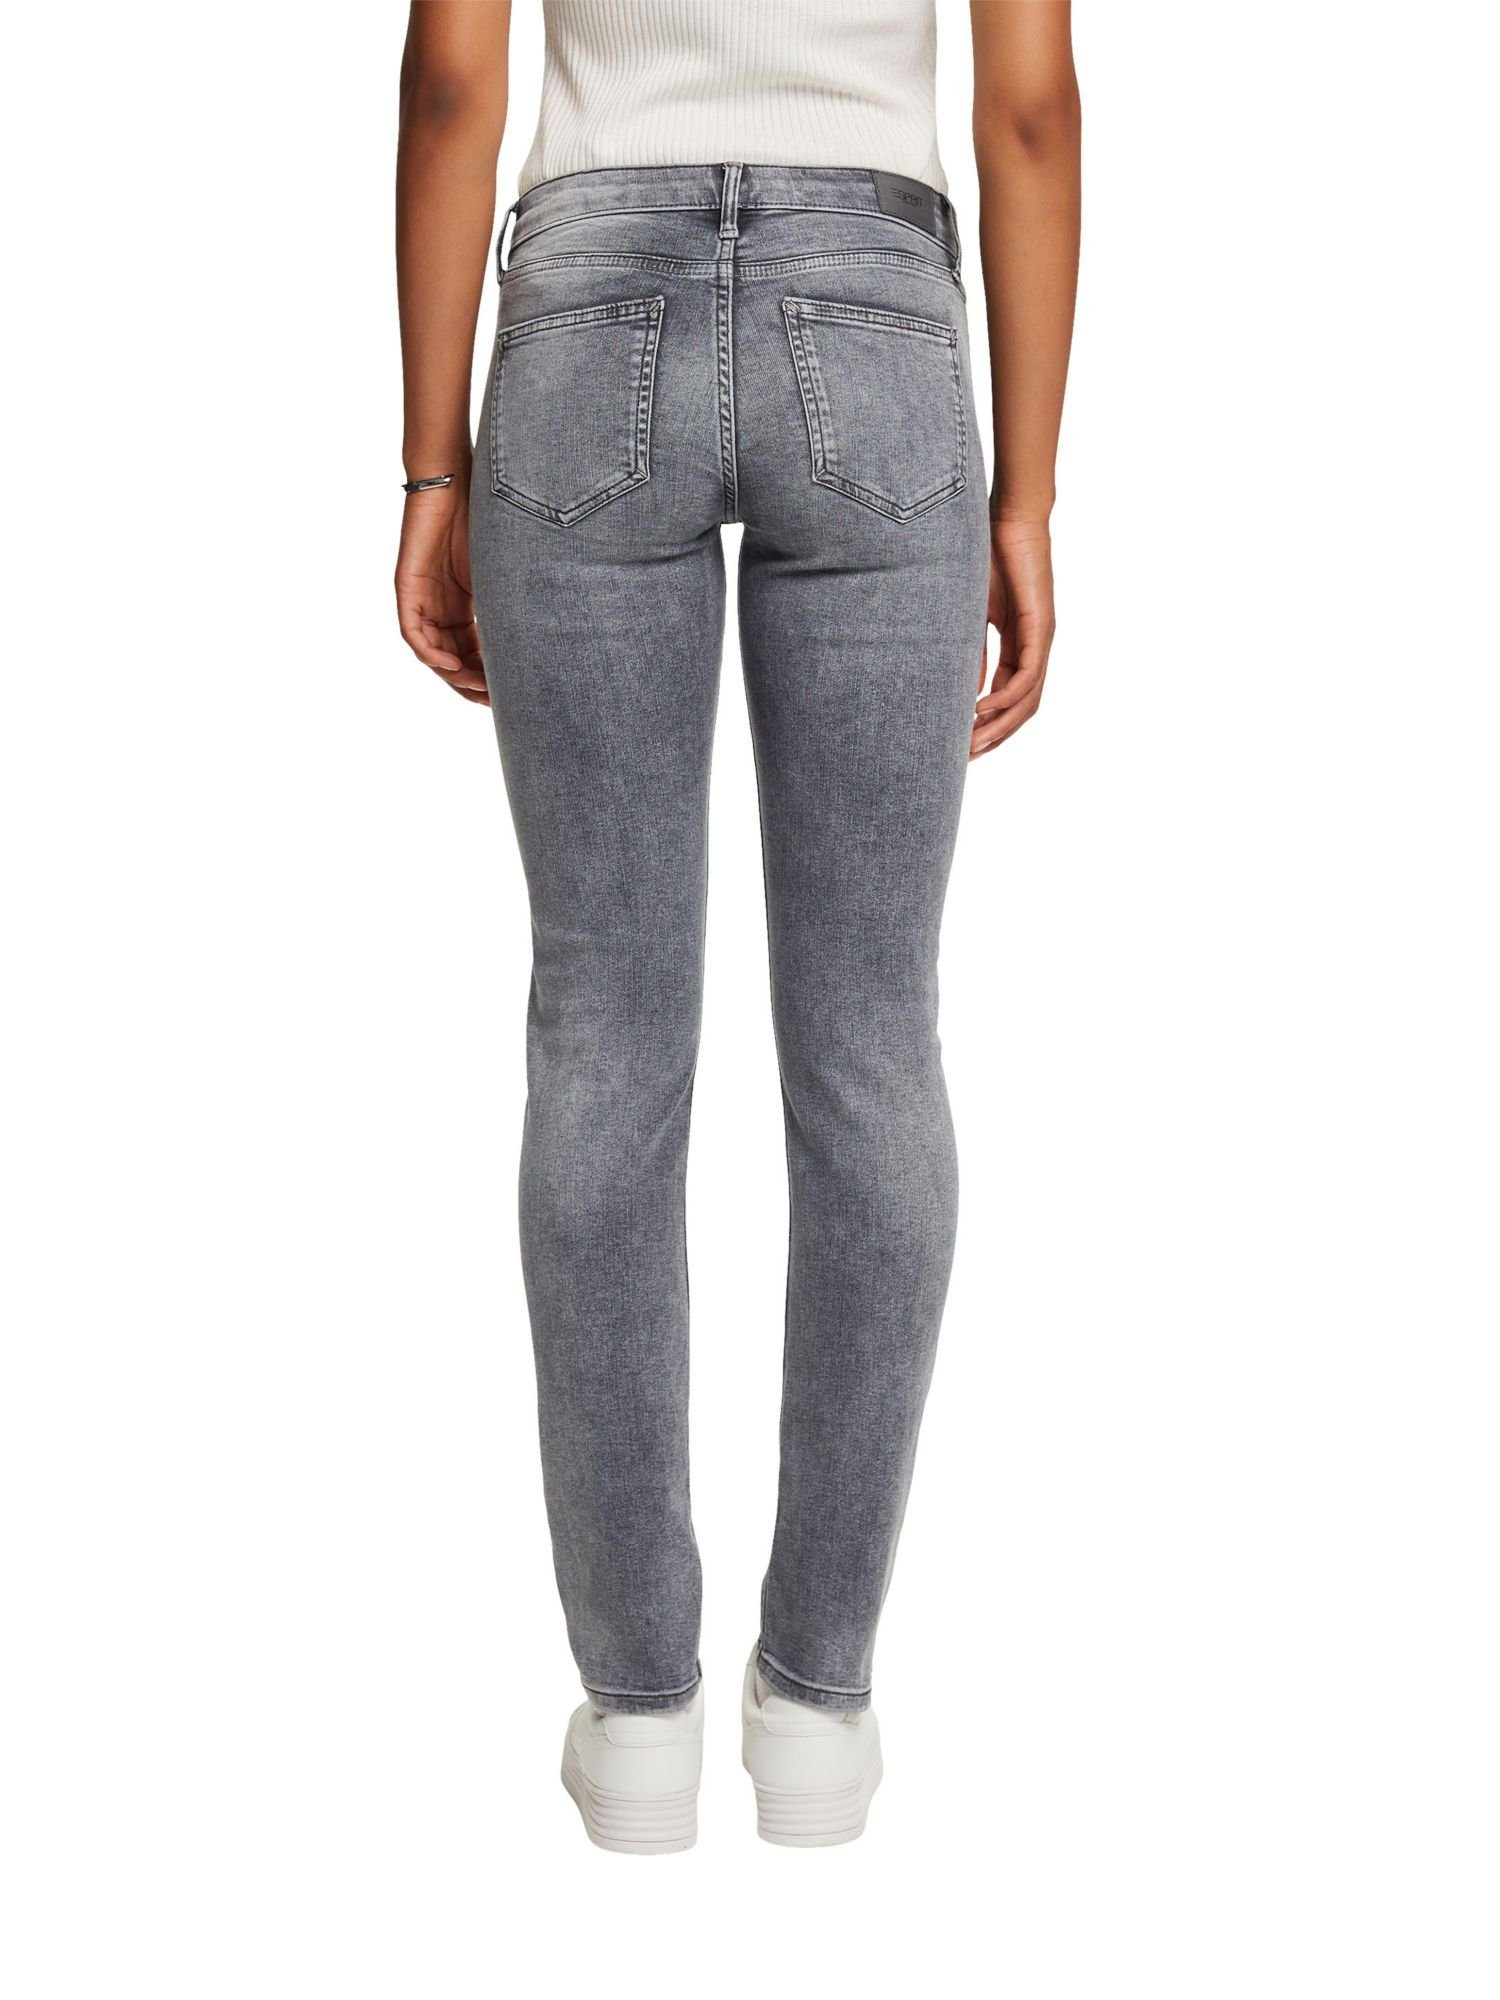 Bundhöhe mit Jeans mittlerer Esprit Slim-fit-Jeans schmaler Passform und